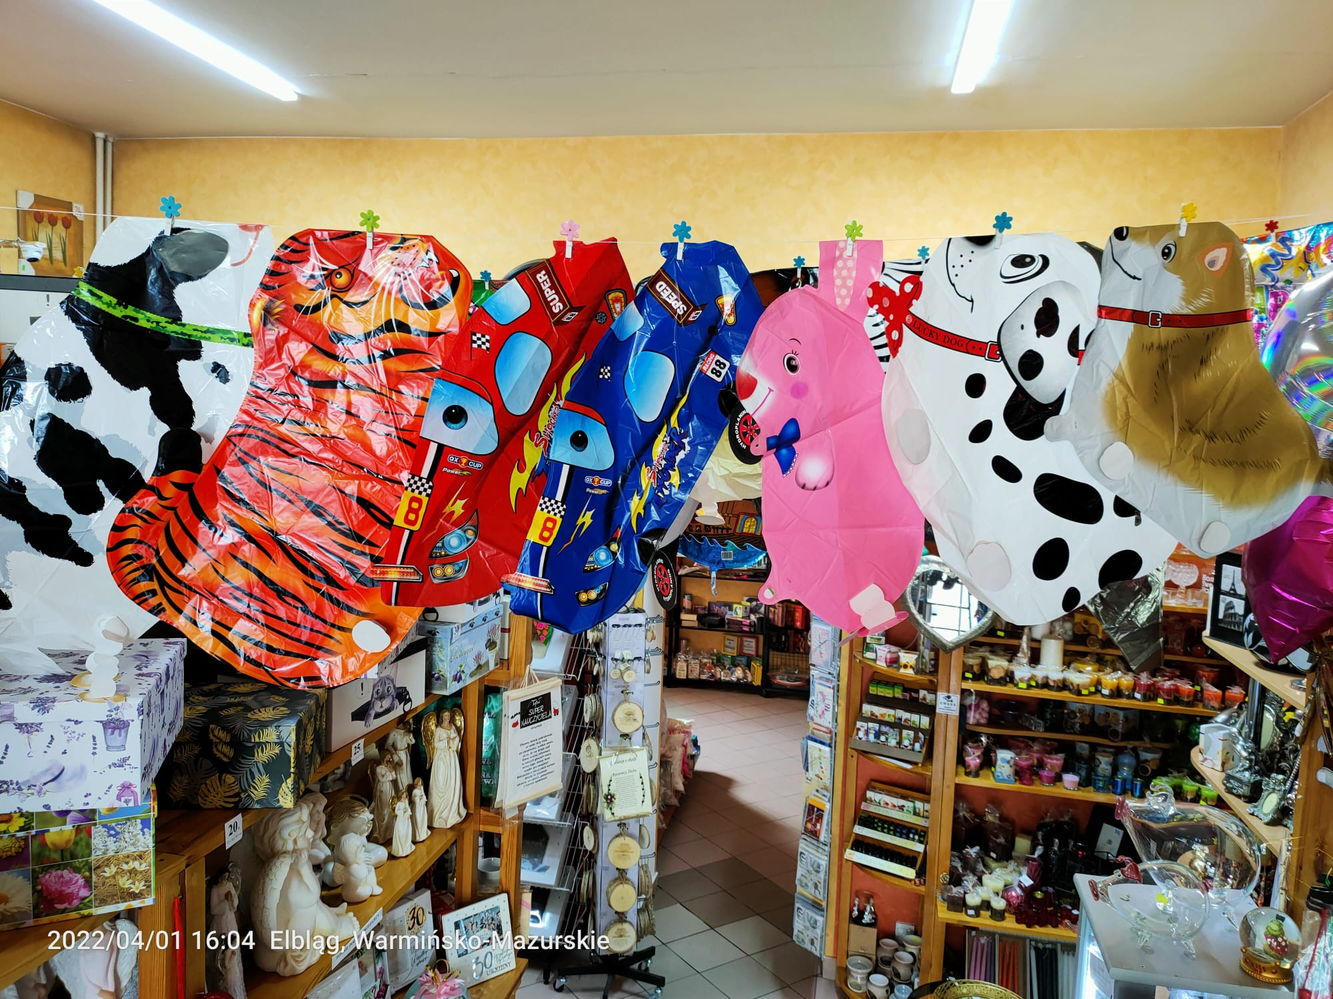 balony napełniane helem - balony chodzące: piesek łaciaty, tygrys, autko sportowe czerwone, autko sportowe niebieskie, królik, pieski